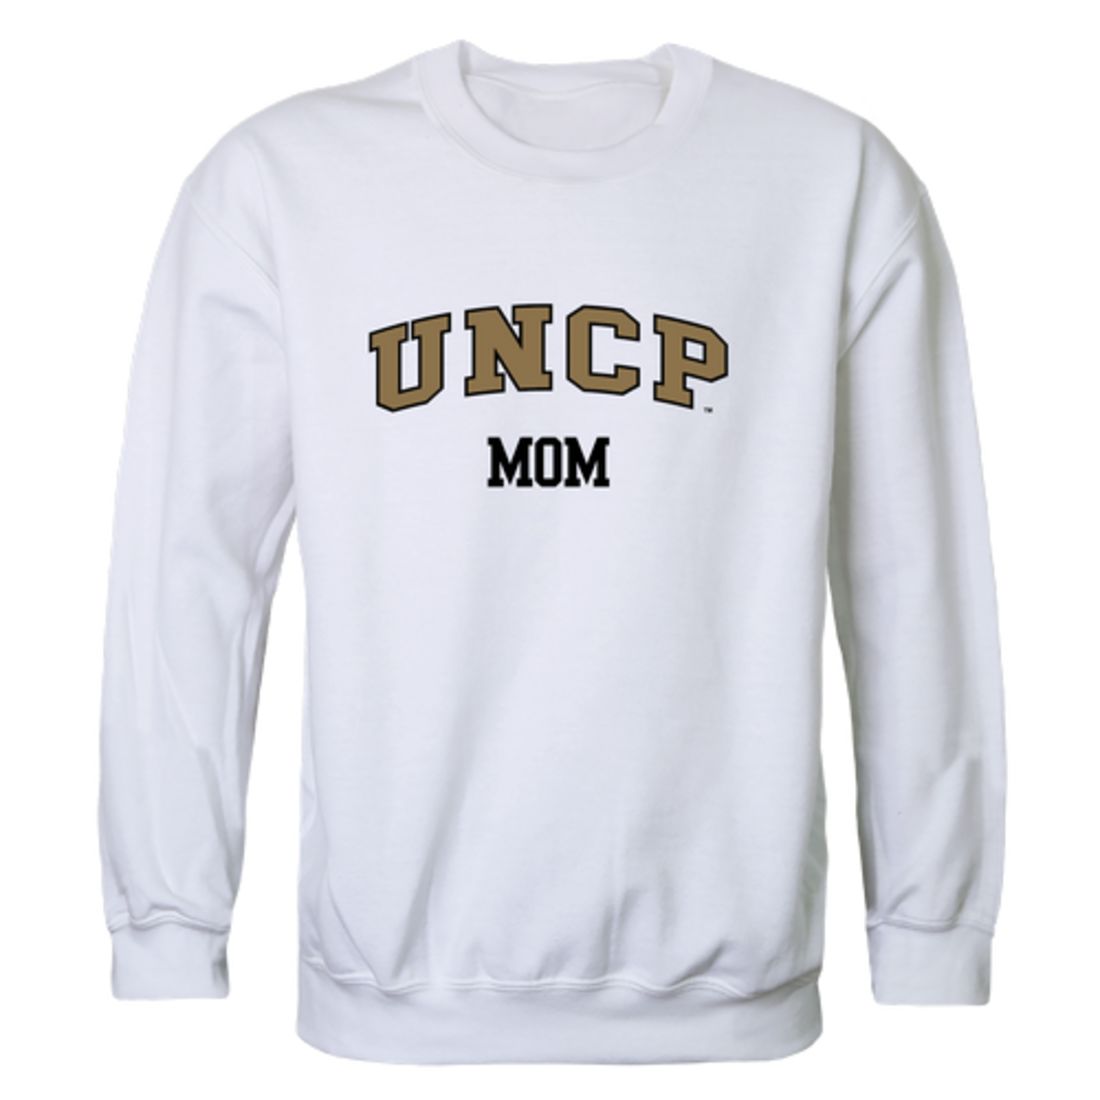 UNCP University of North Carolina at Pembroke Braves Mom Fleece Crewneck Pullover Sweatshirt Black Small-Campus-Wardrobe